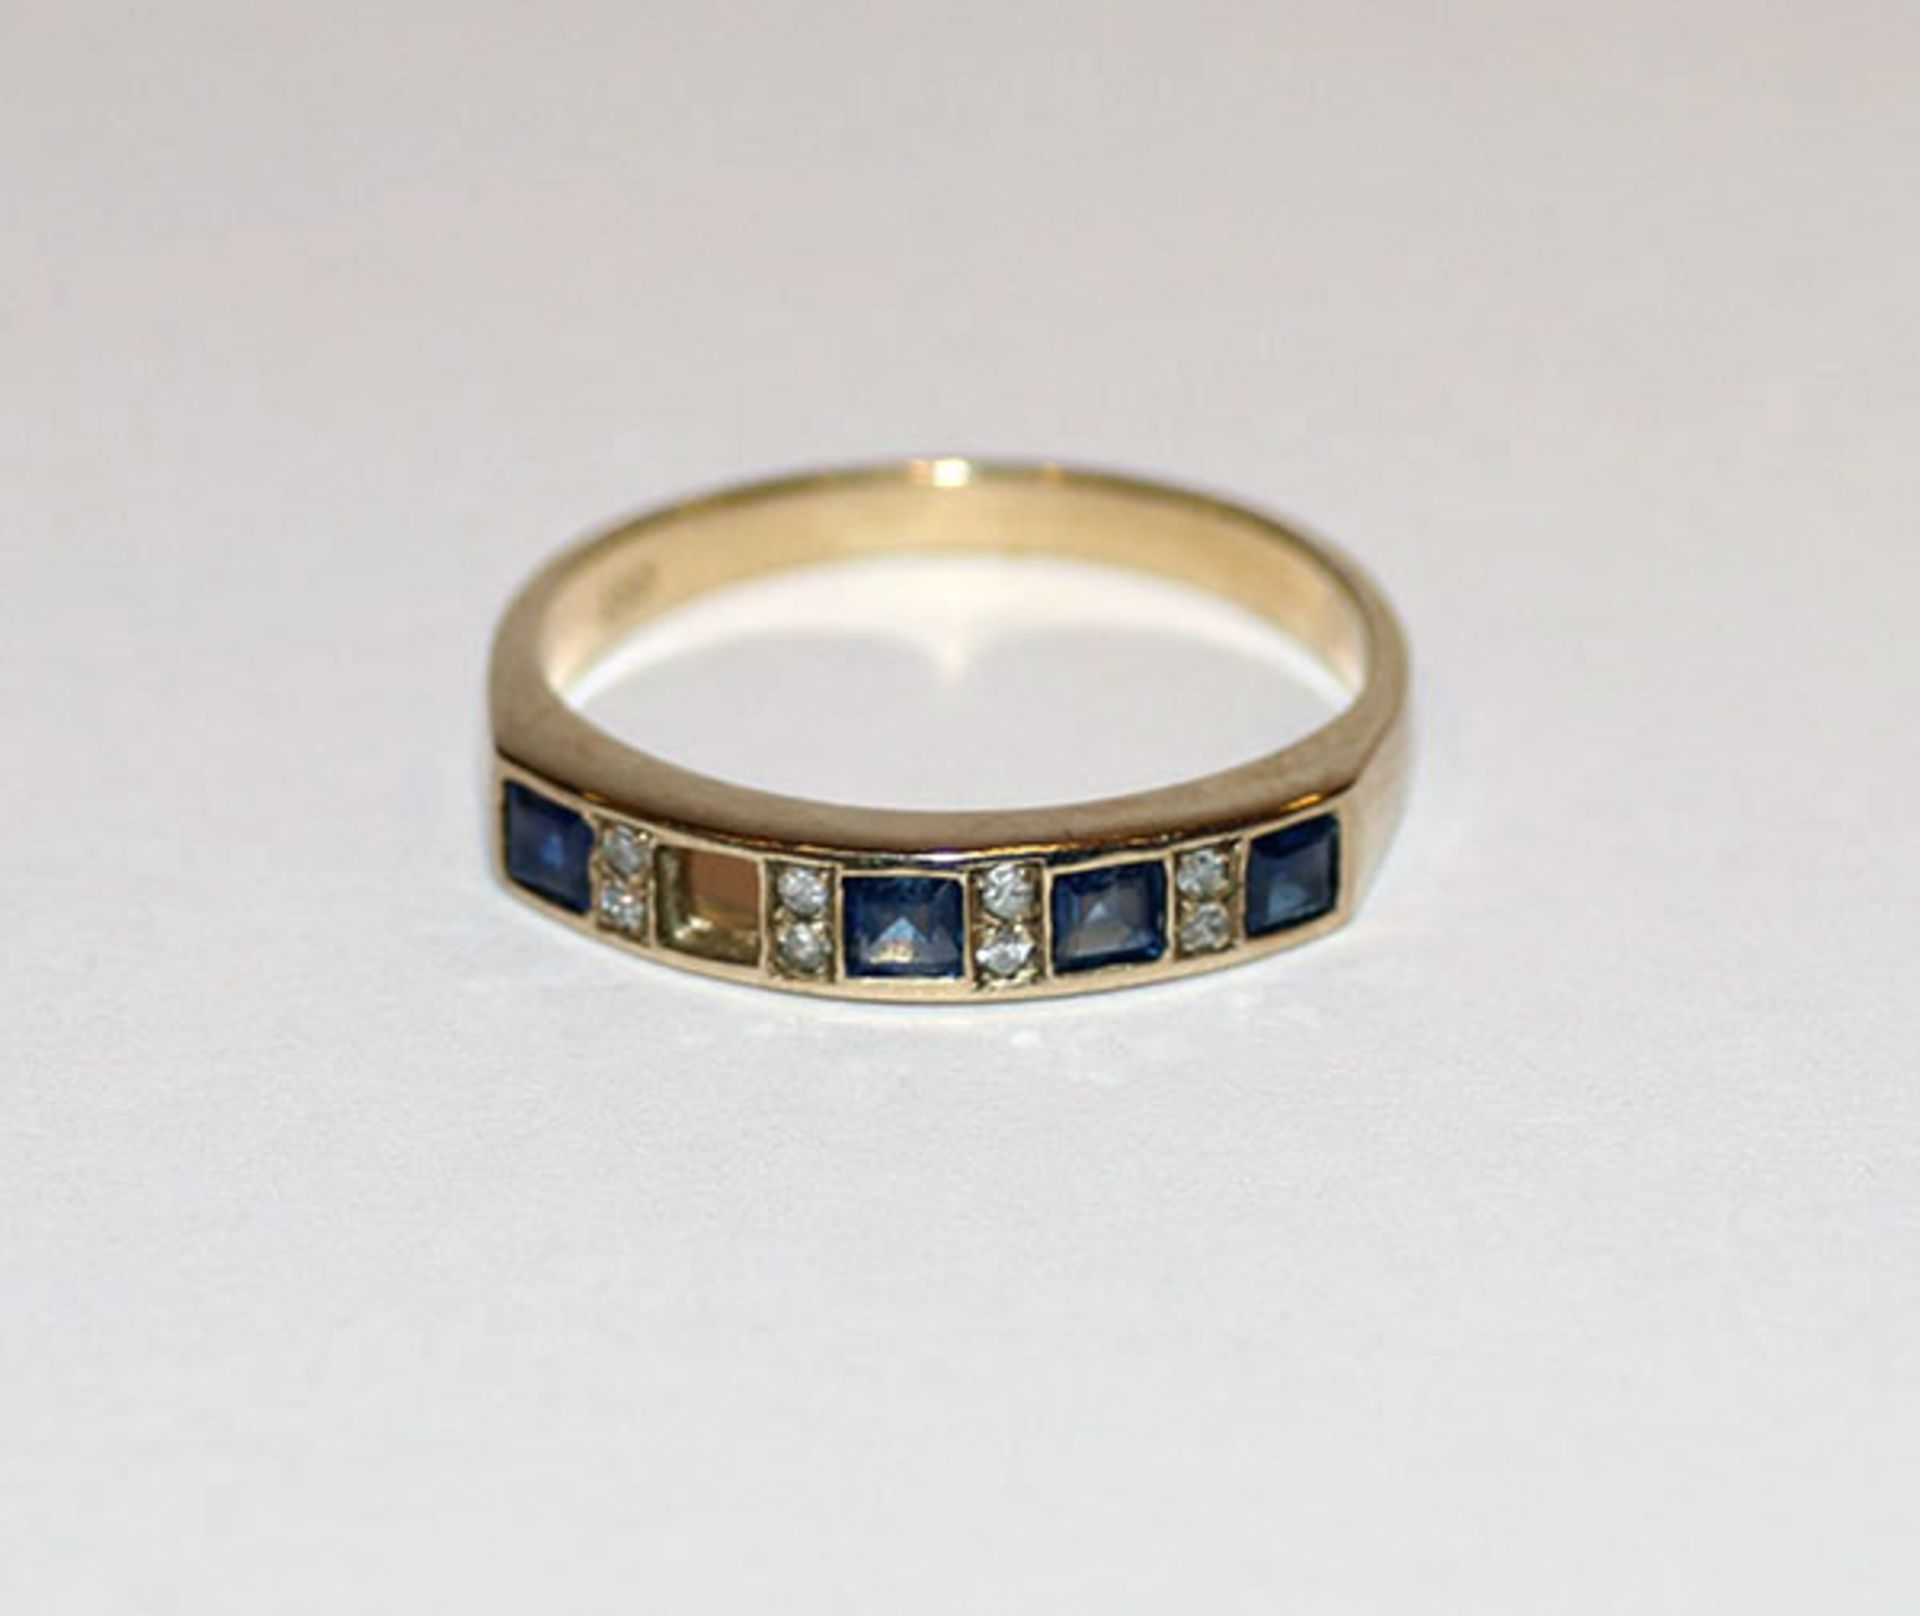 8 k Gelbgold Ring mit 4 Diamanten und 4 Safiren, ein Safir fehlt, 1,56 gr., Gr. 50